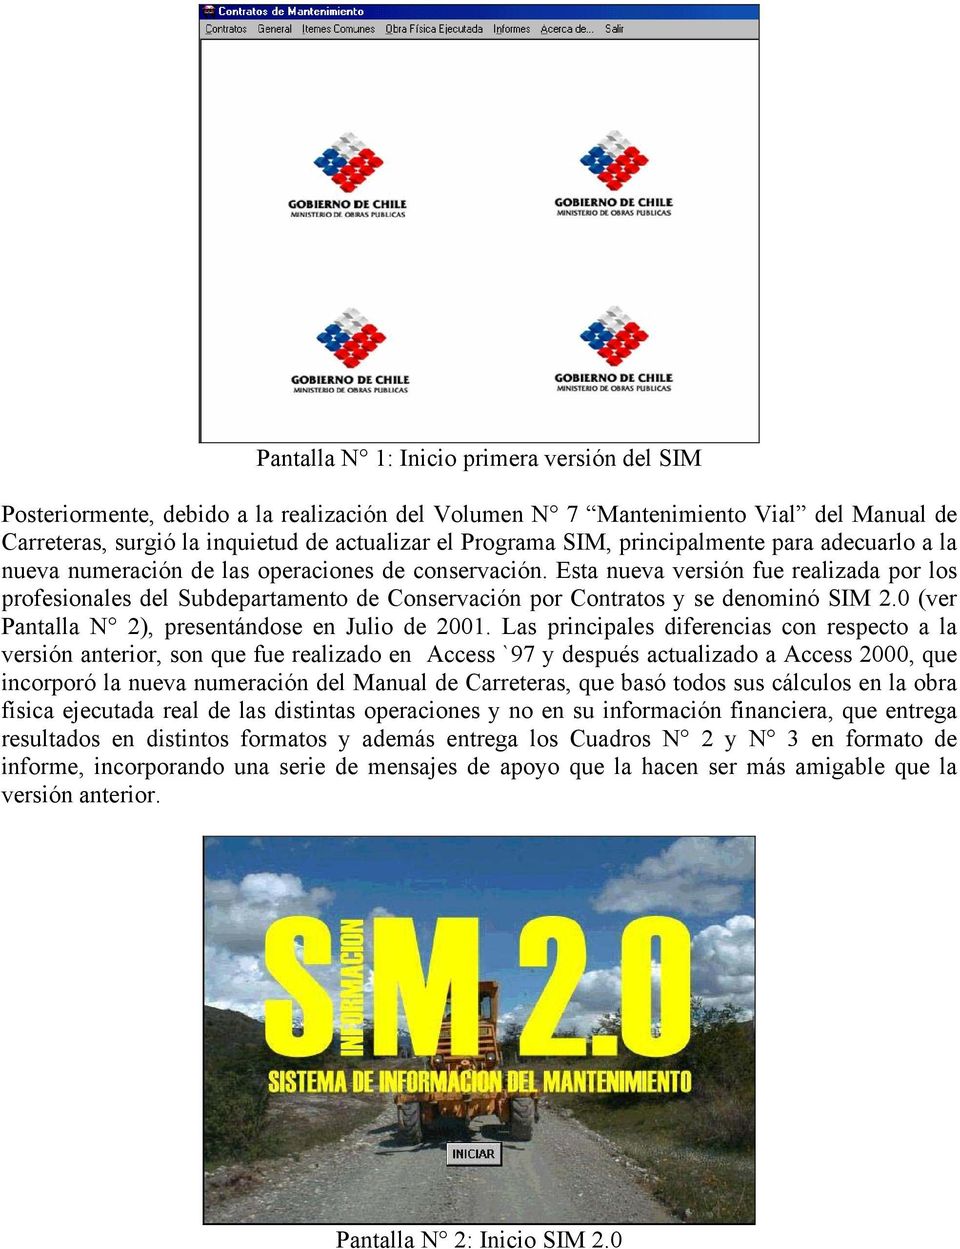 Esta nueva versión fue realizada por los profesionales del Subdepartamento de Conservación por Contratos y se denominó SIM 2.0 (ver Pantalla N 2), presentándose en Julio de 2001.